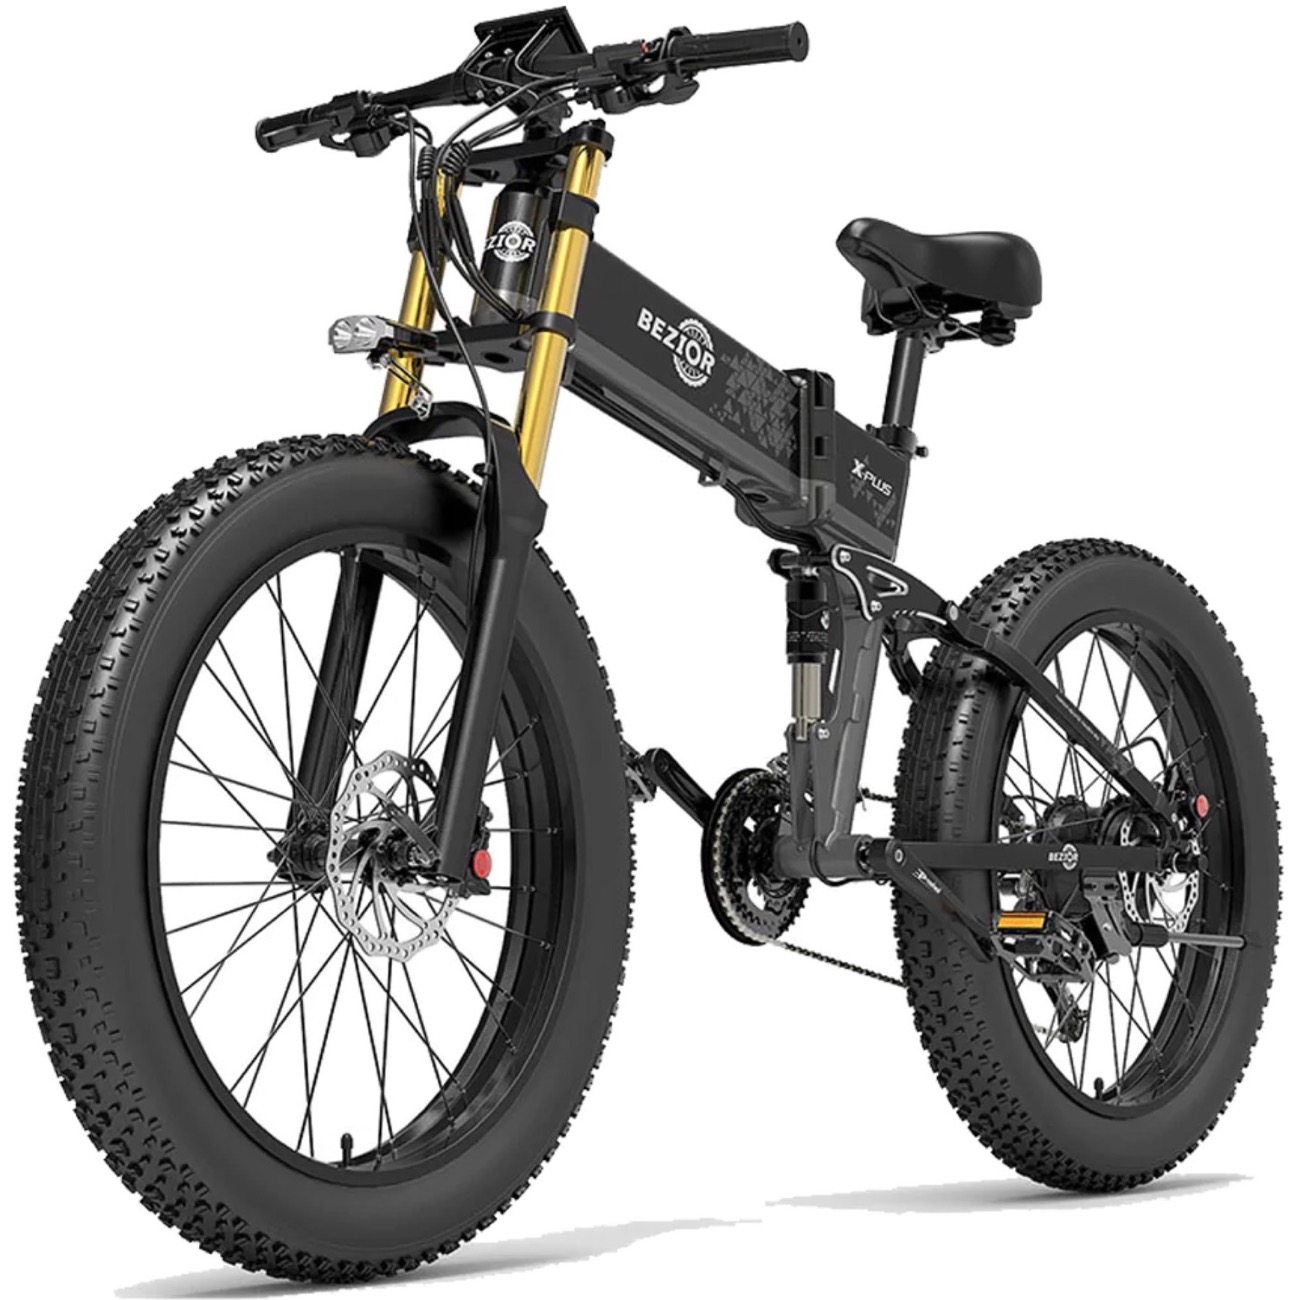 La bici elettrica Bezior X Plus sembra una naked